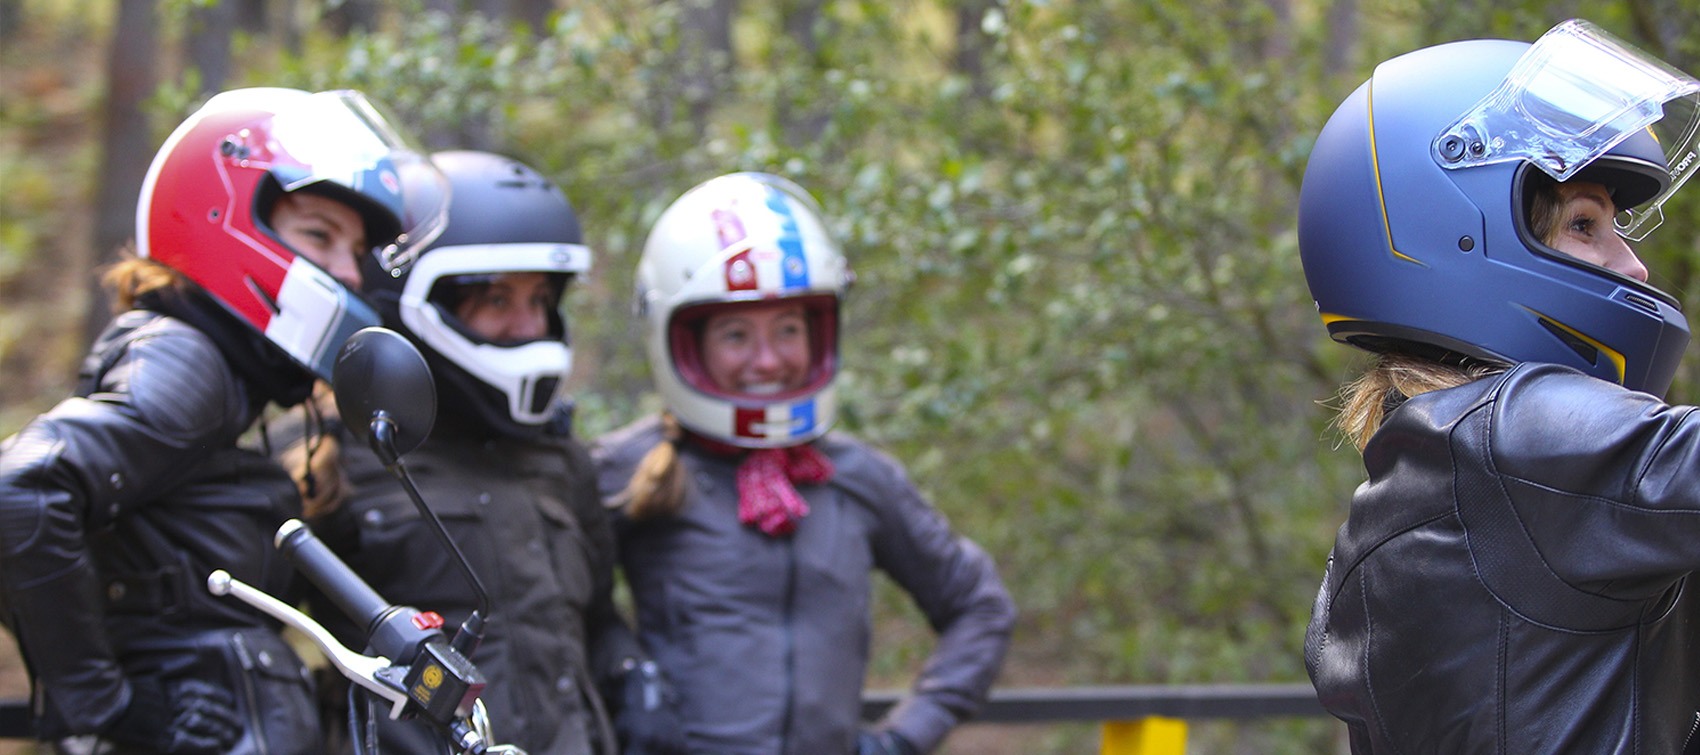 Chicas con casco BELL haciendose un selfie en ruta en moto